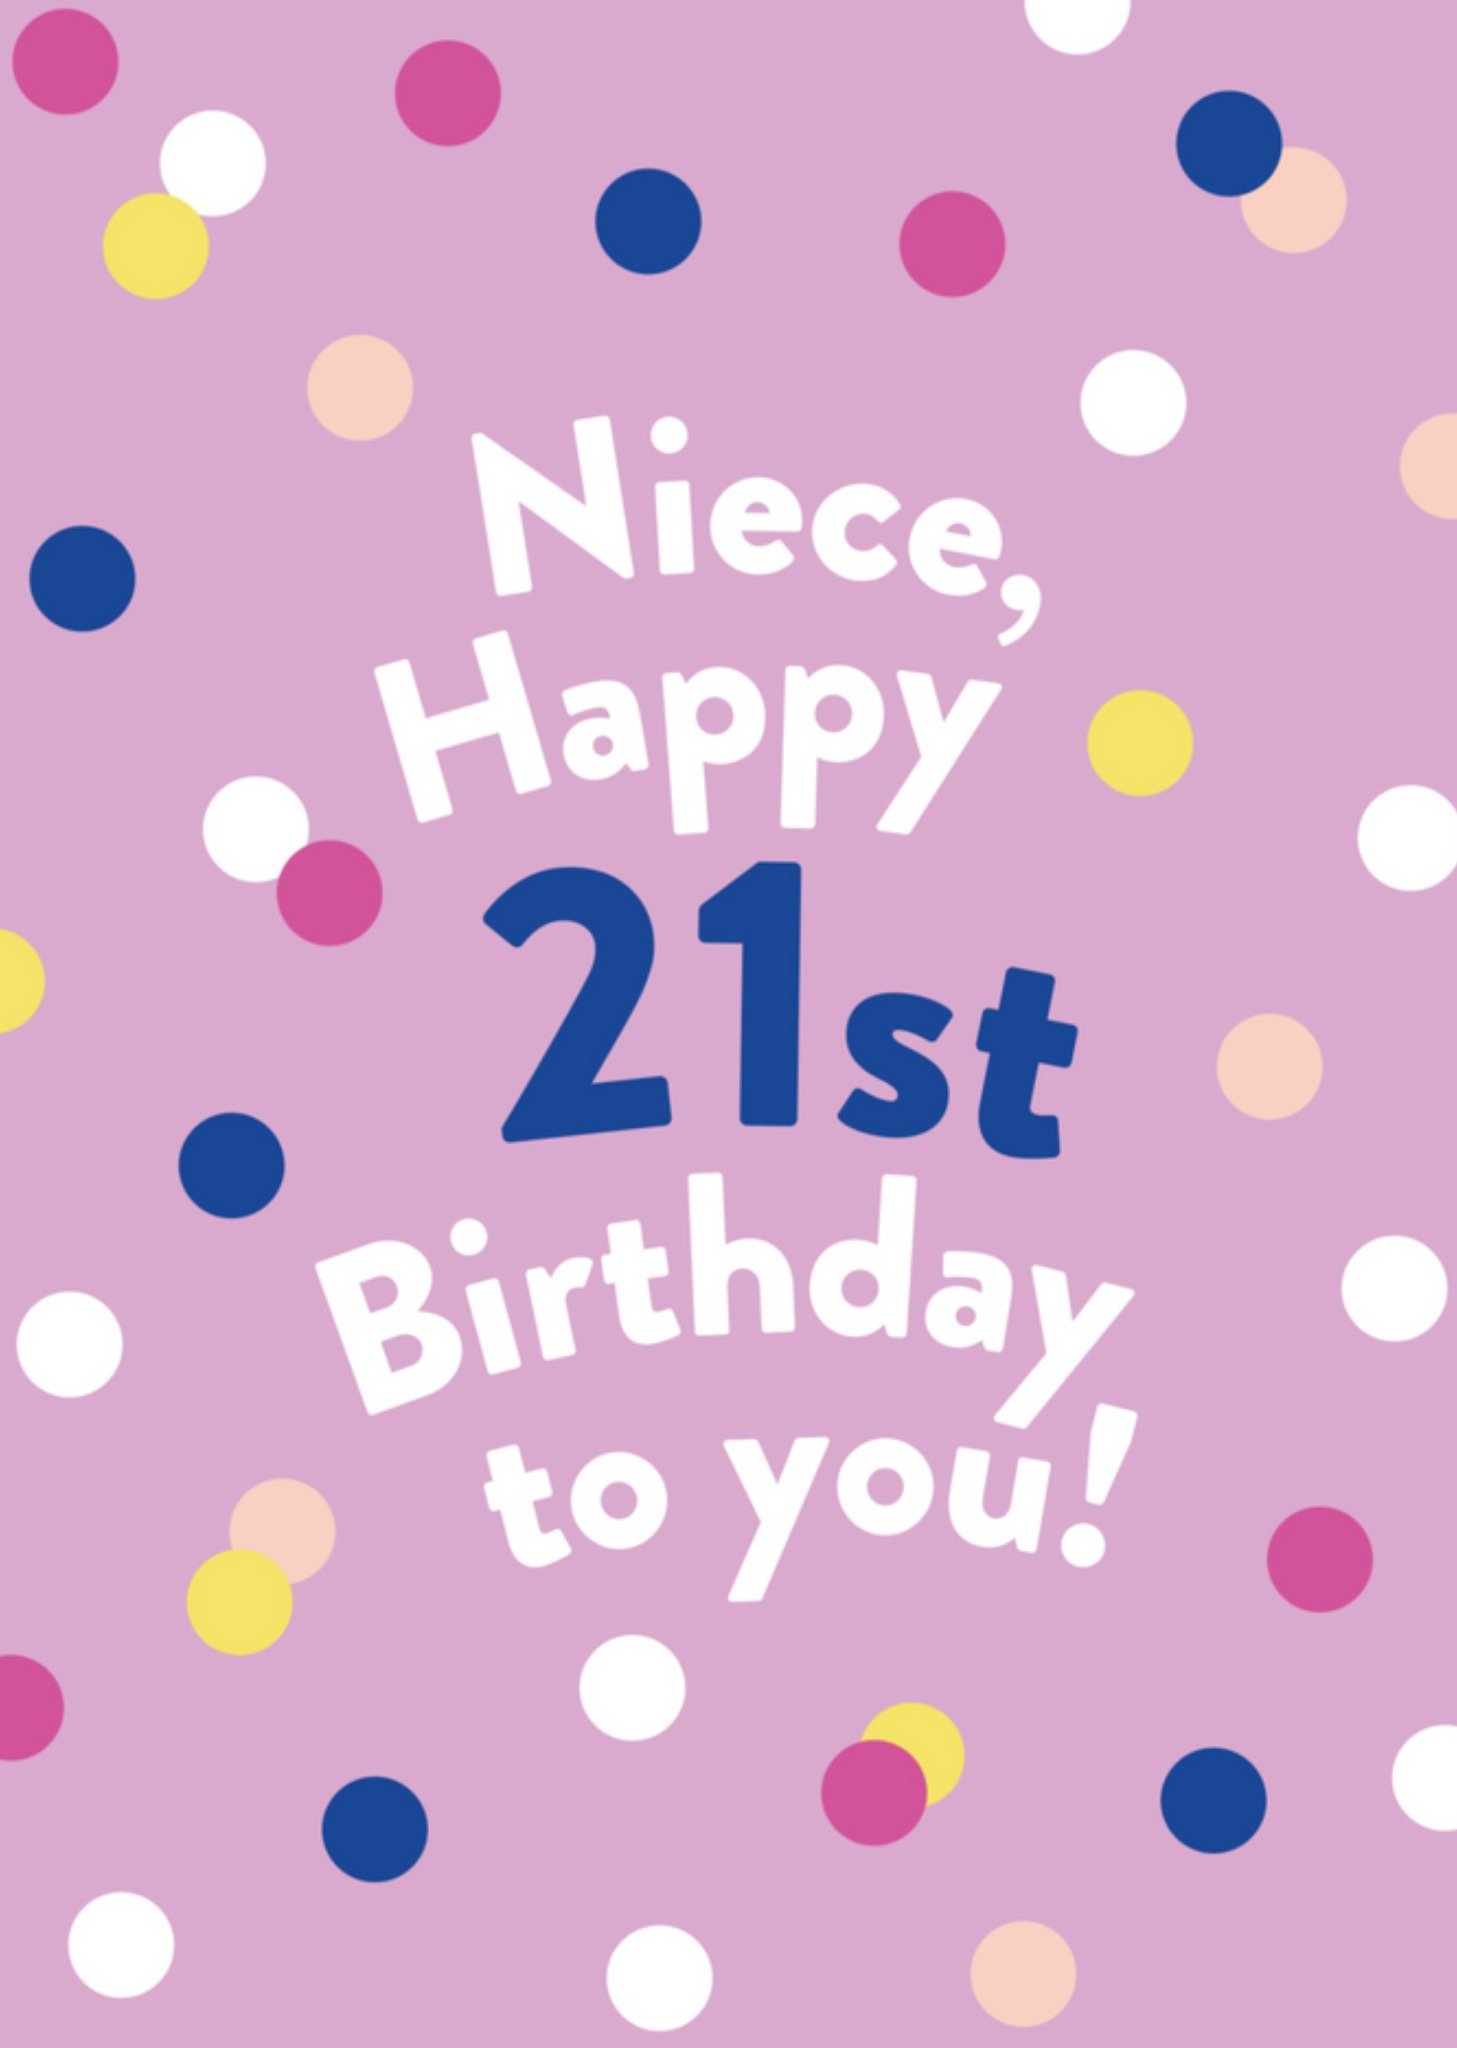 Verjaardagskaart - Niece happy 21st